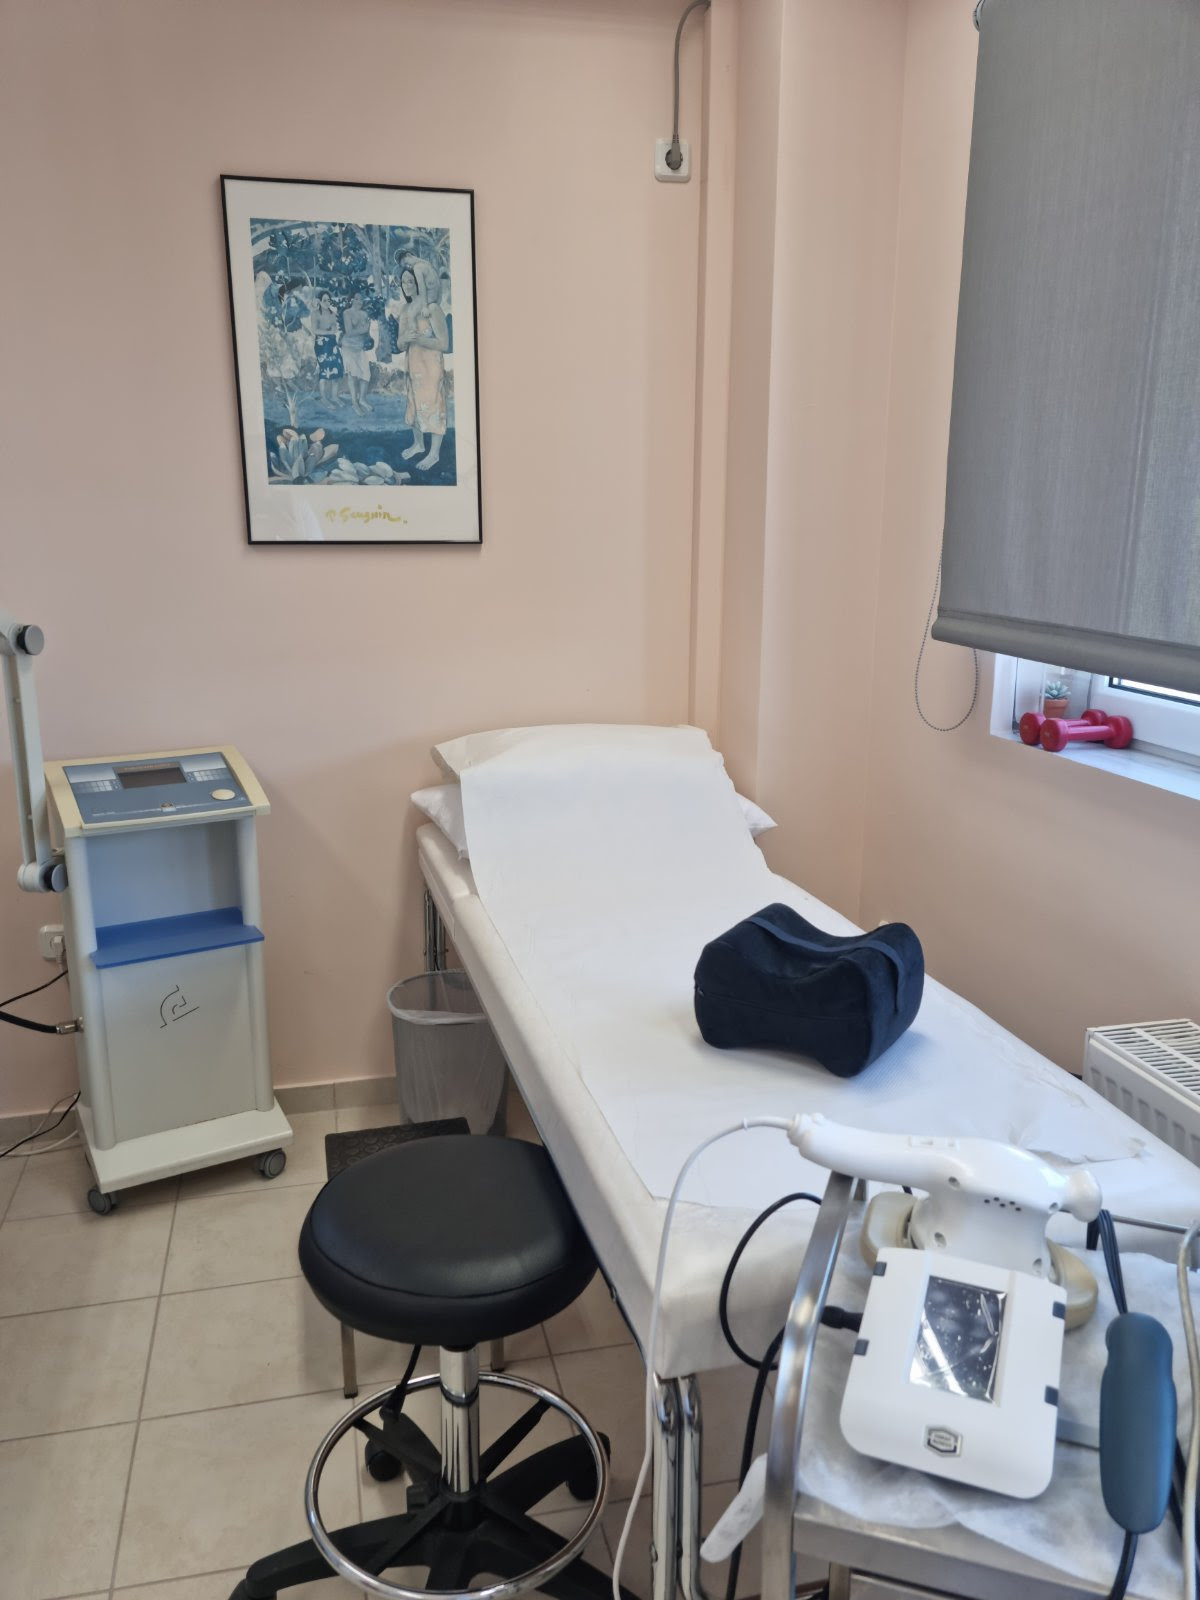 Δήμος Παιανίας: Δωρεάν φυσικοθεραπείες για τα μέλη των ΚΑΠΗ